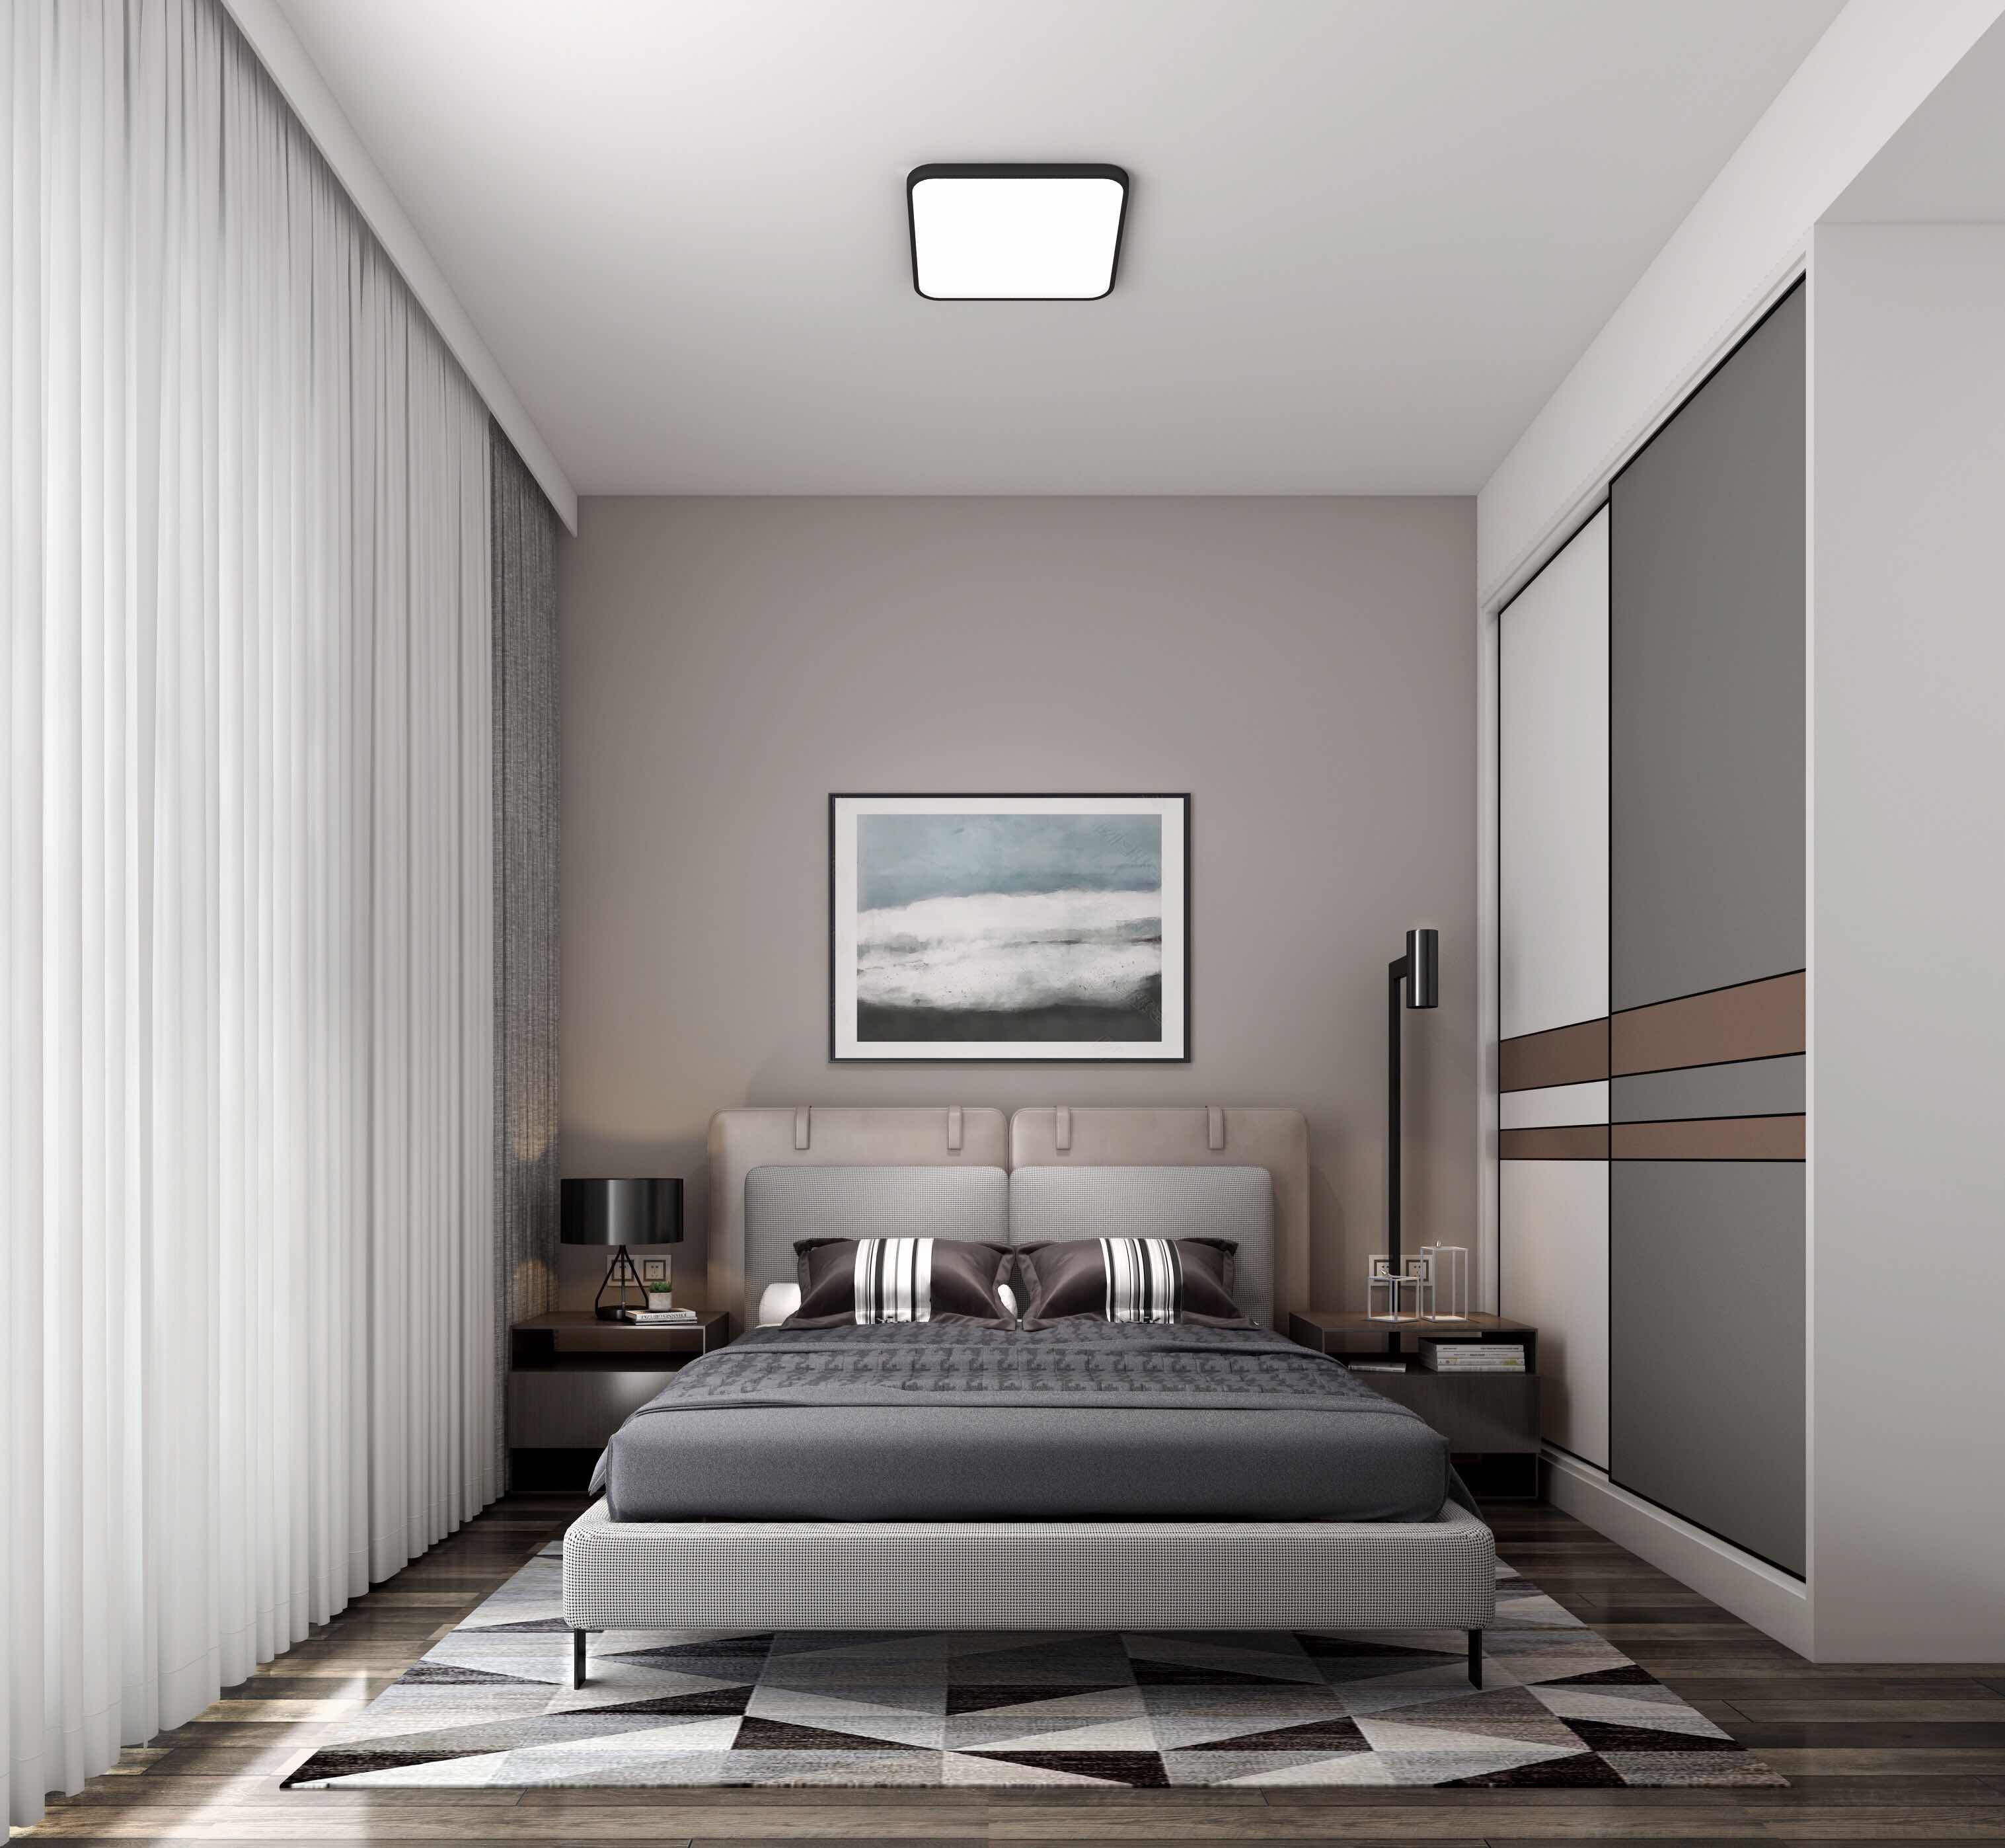 港逸豪庭100平方米现代简约风格平层户型卧室装修效果图